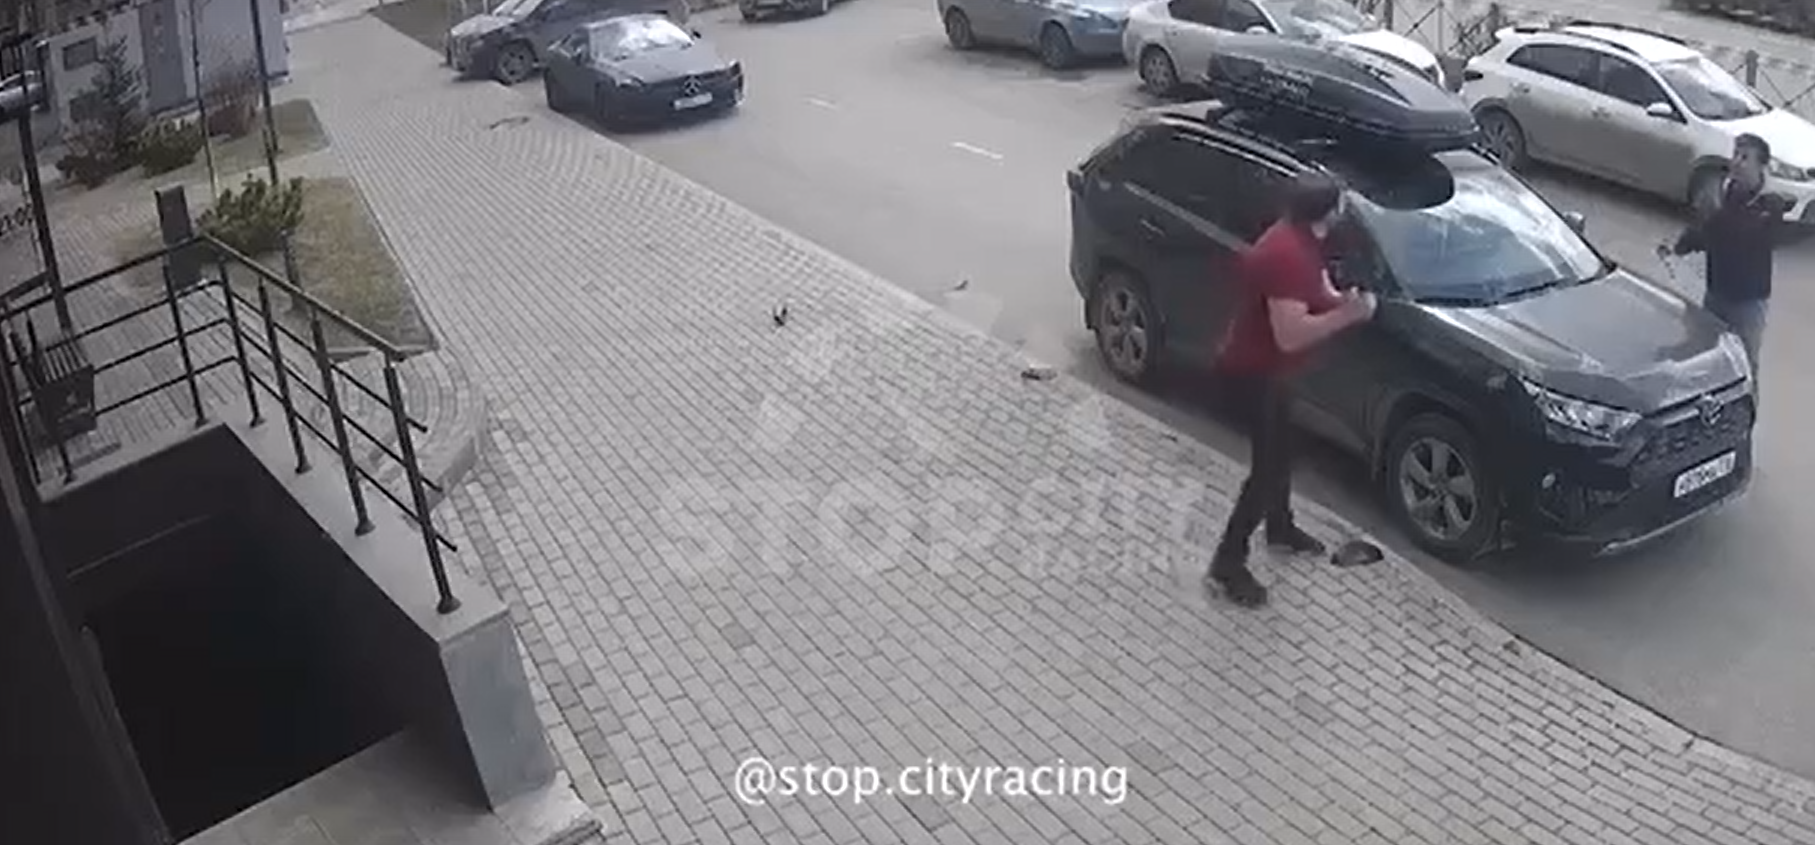 В Сети появилось видео, как в Татарстане мужчина огромным ножом повредил автомобиль